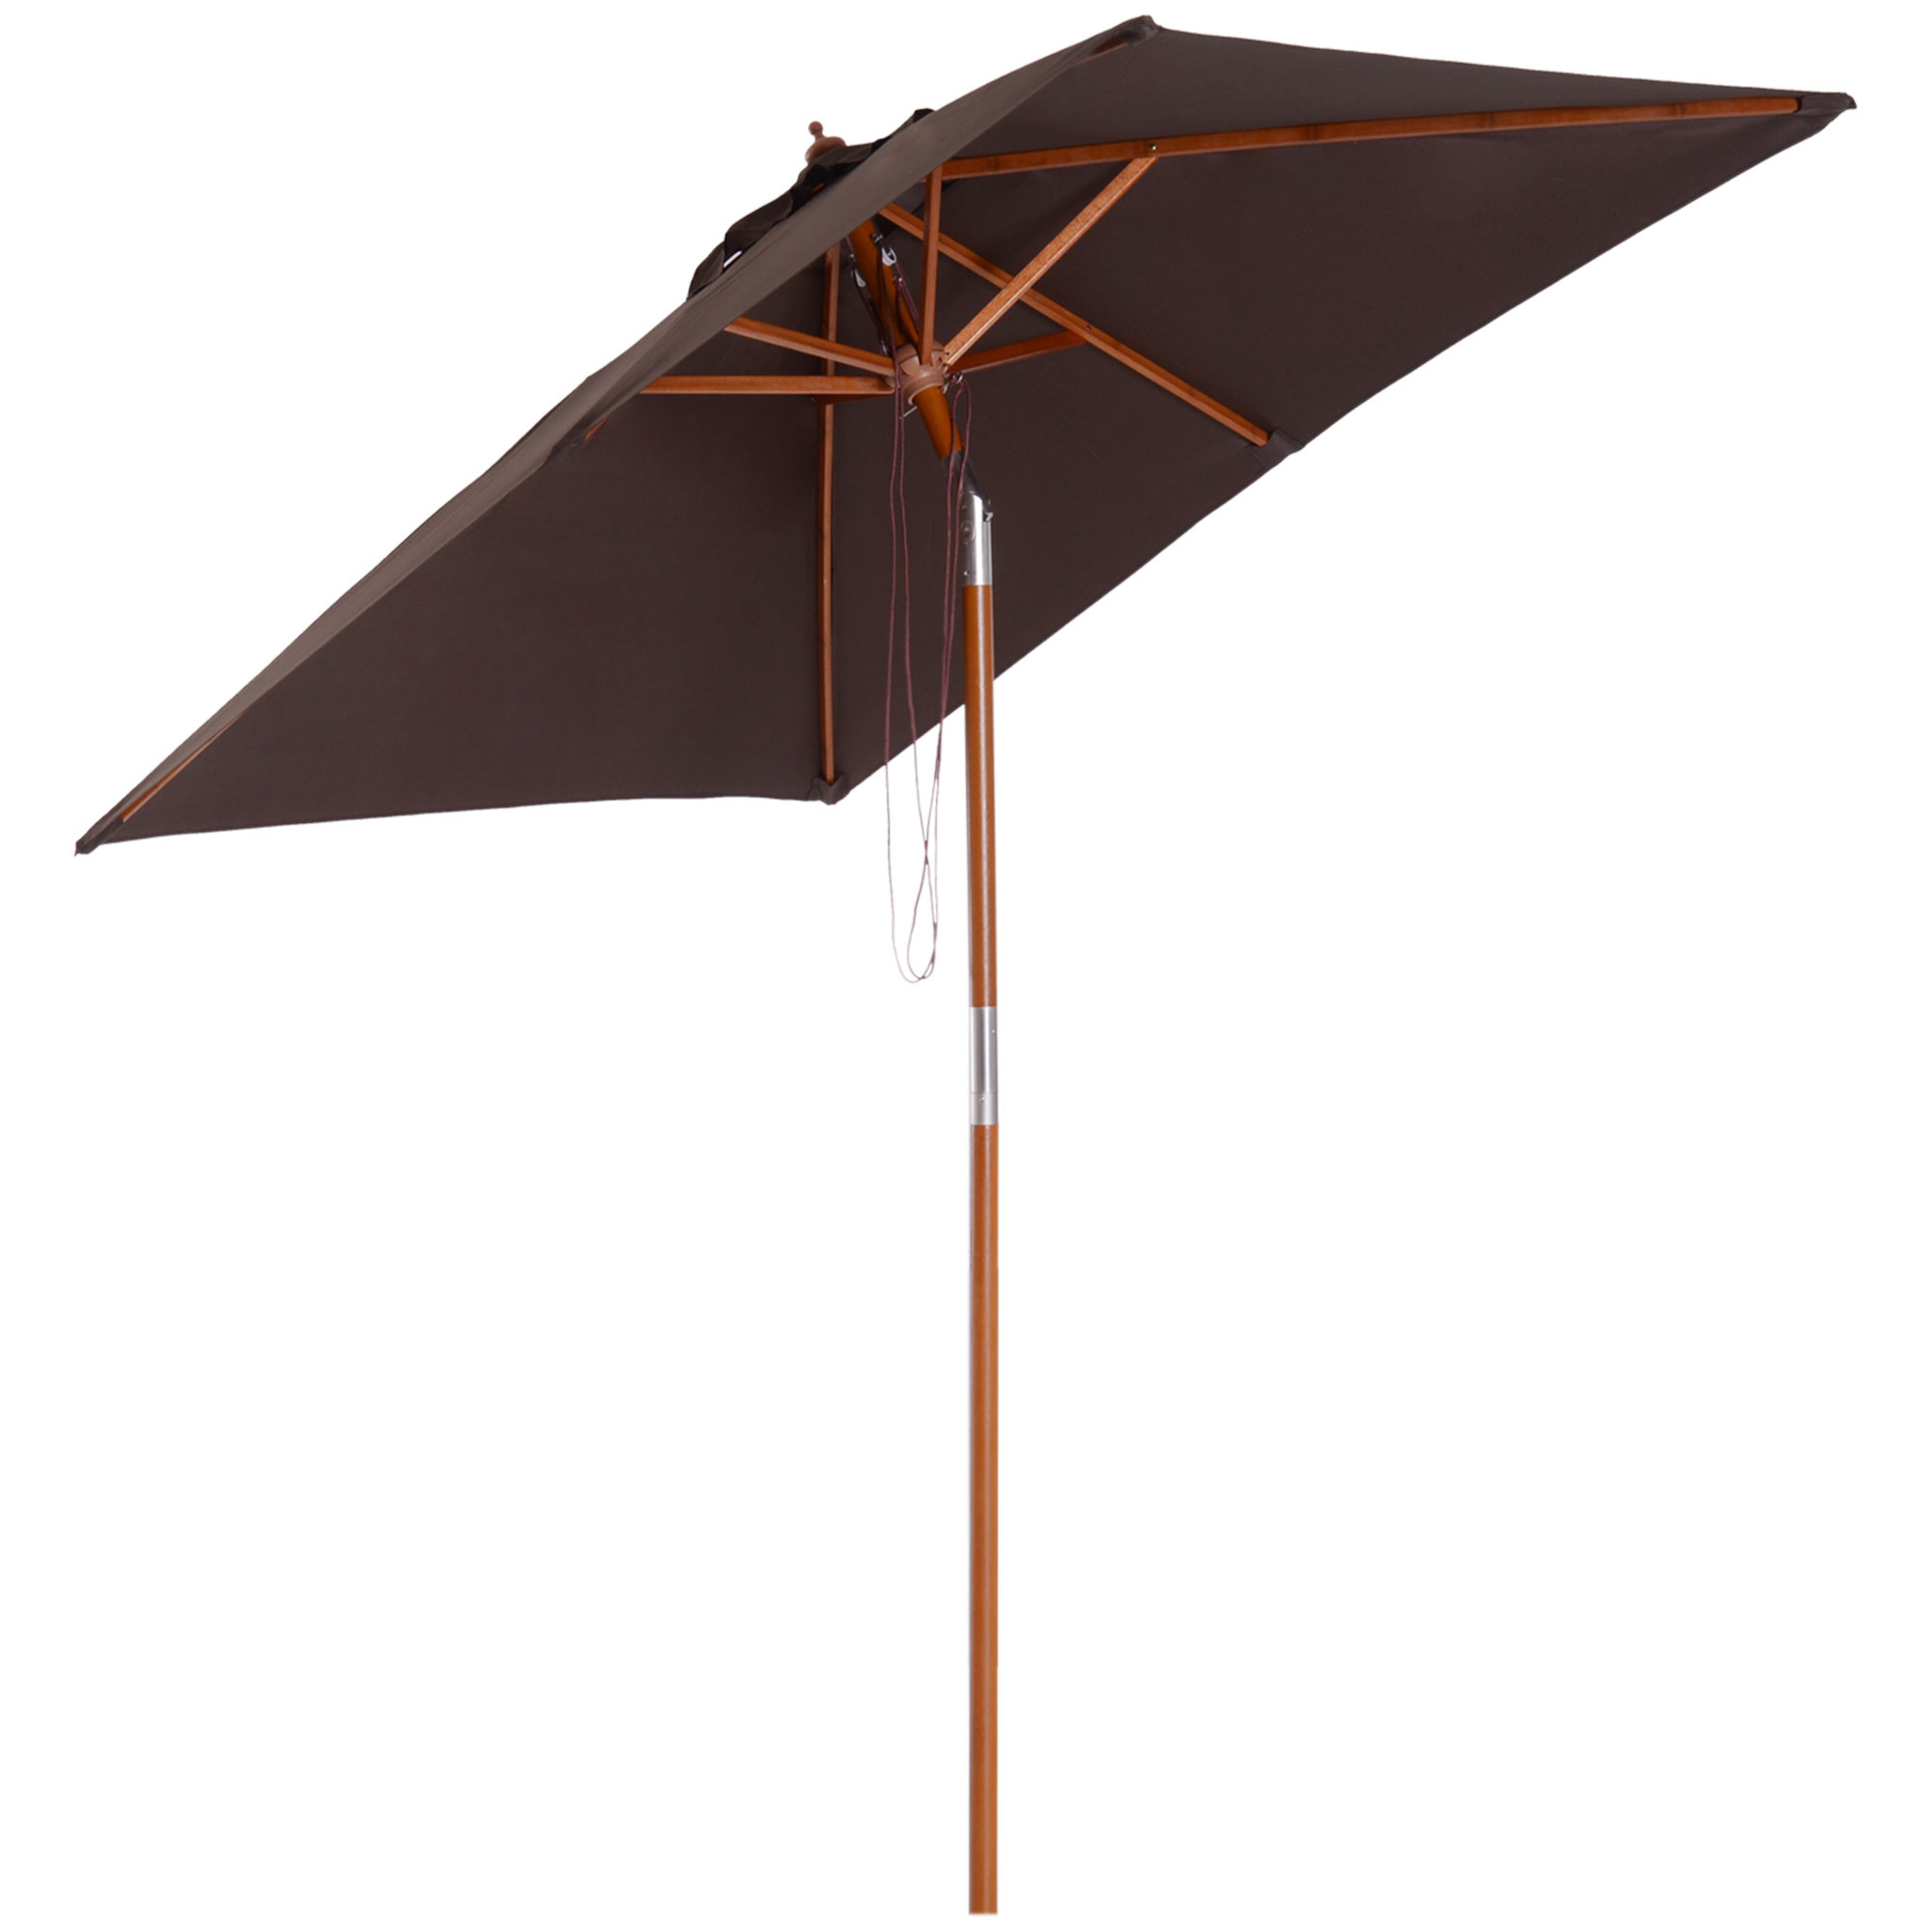 Sunny parasol 3-niveau helling hout koffie 200 x 150 x 230 cm